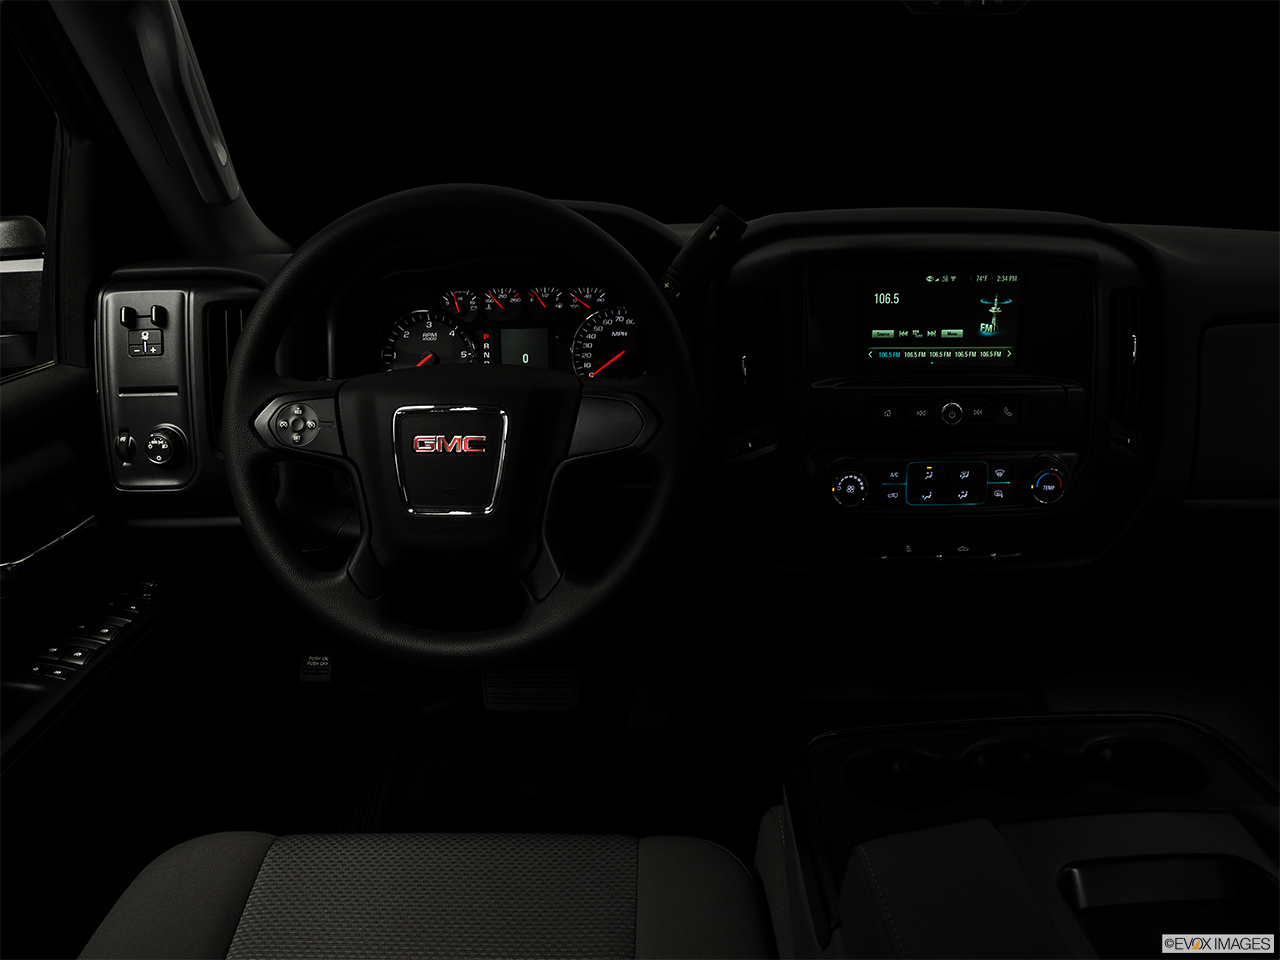 2017 GMC Sierra 3500 HD Base Centered wide dash shot - "night" shot. 